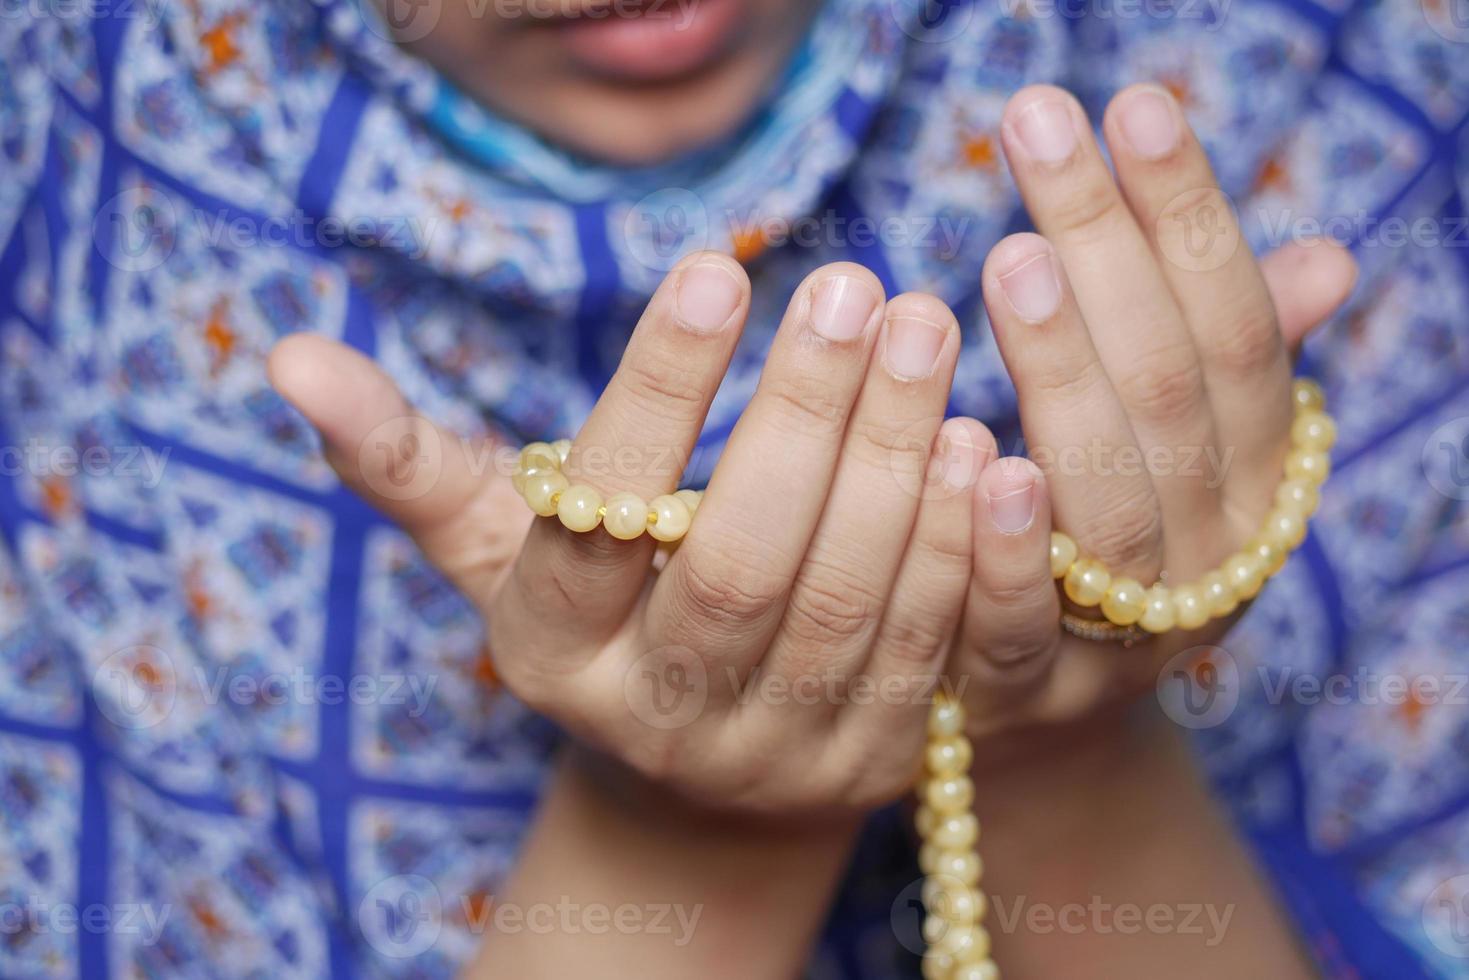 Cerca de la mano de las mujeres musulmanas rezando en Ramadán foto